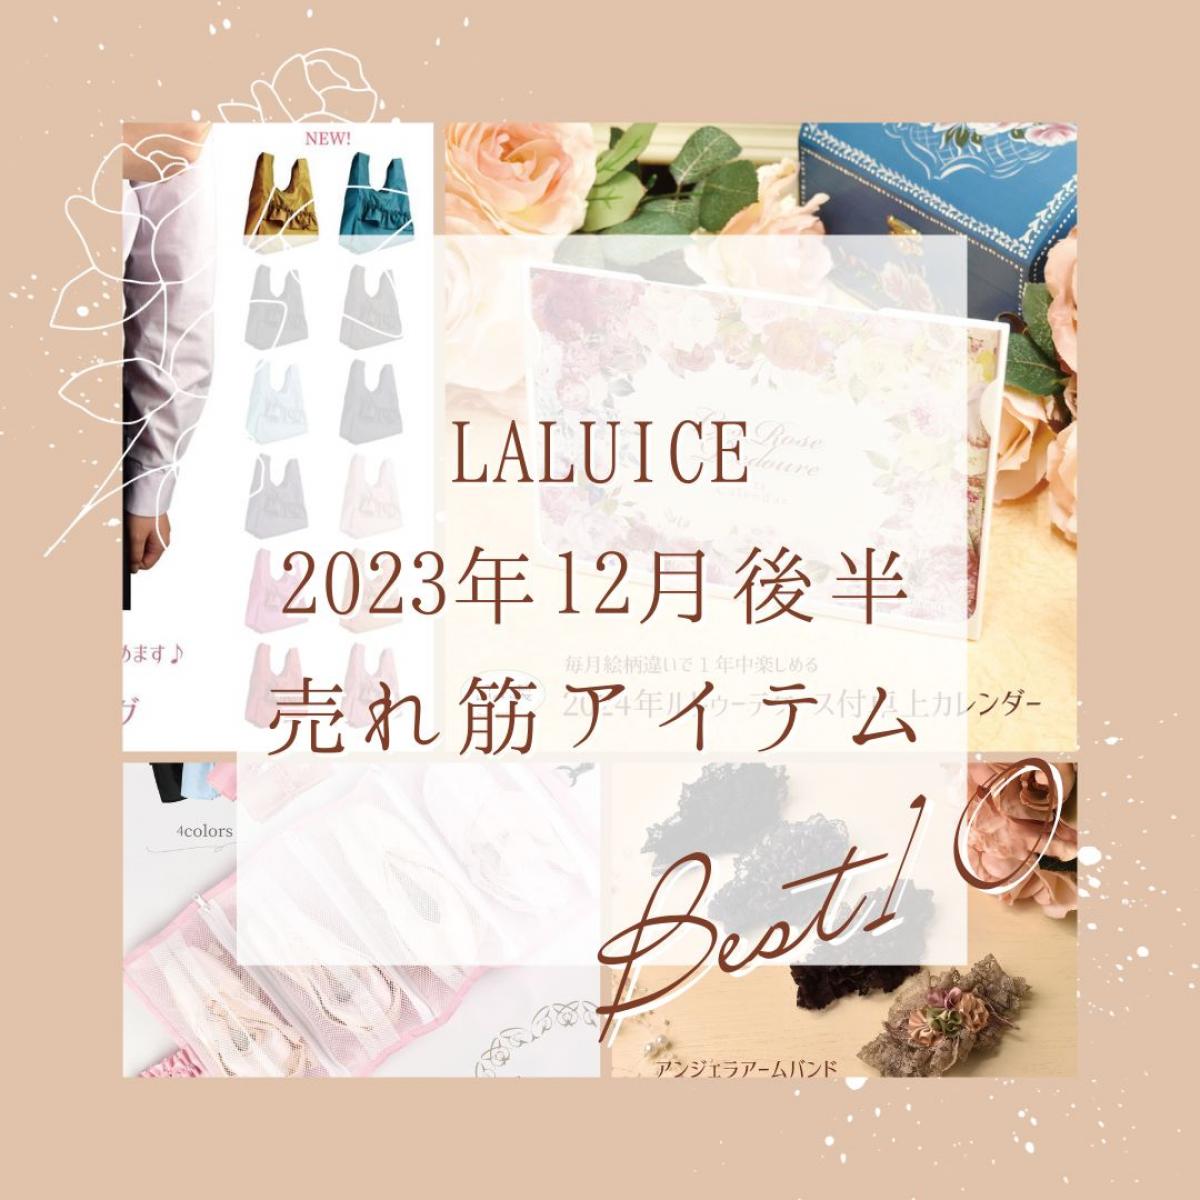 2023年12月後半(12/16～12/31)LALUICEネットショップ売れ筋アイテム BEST10